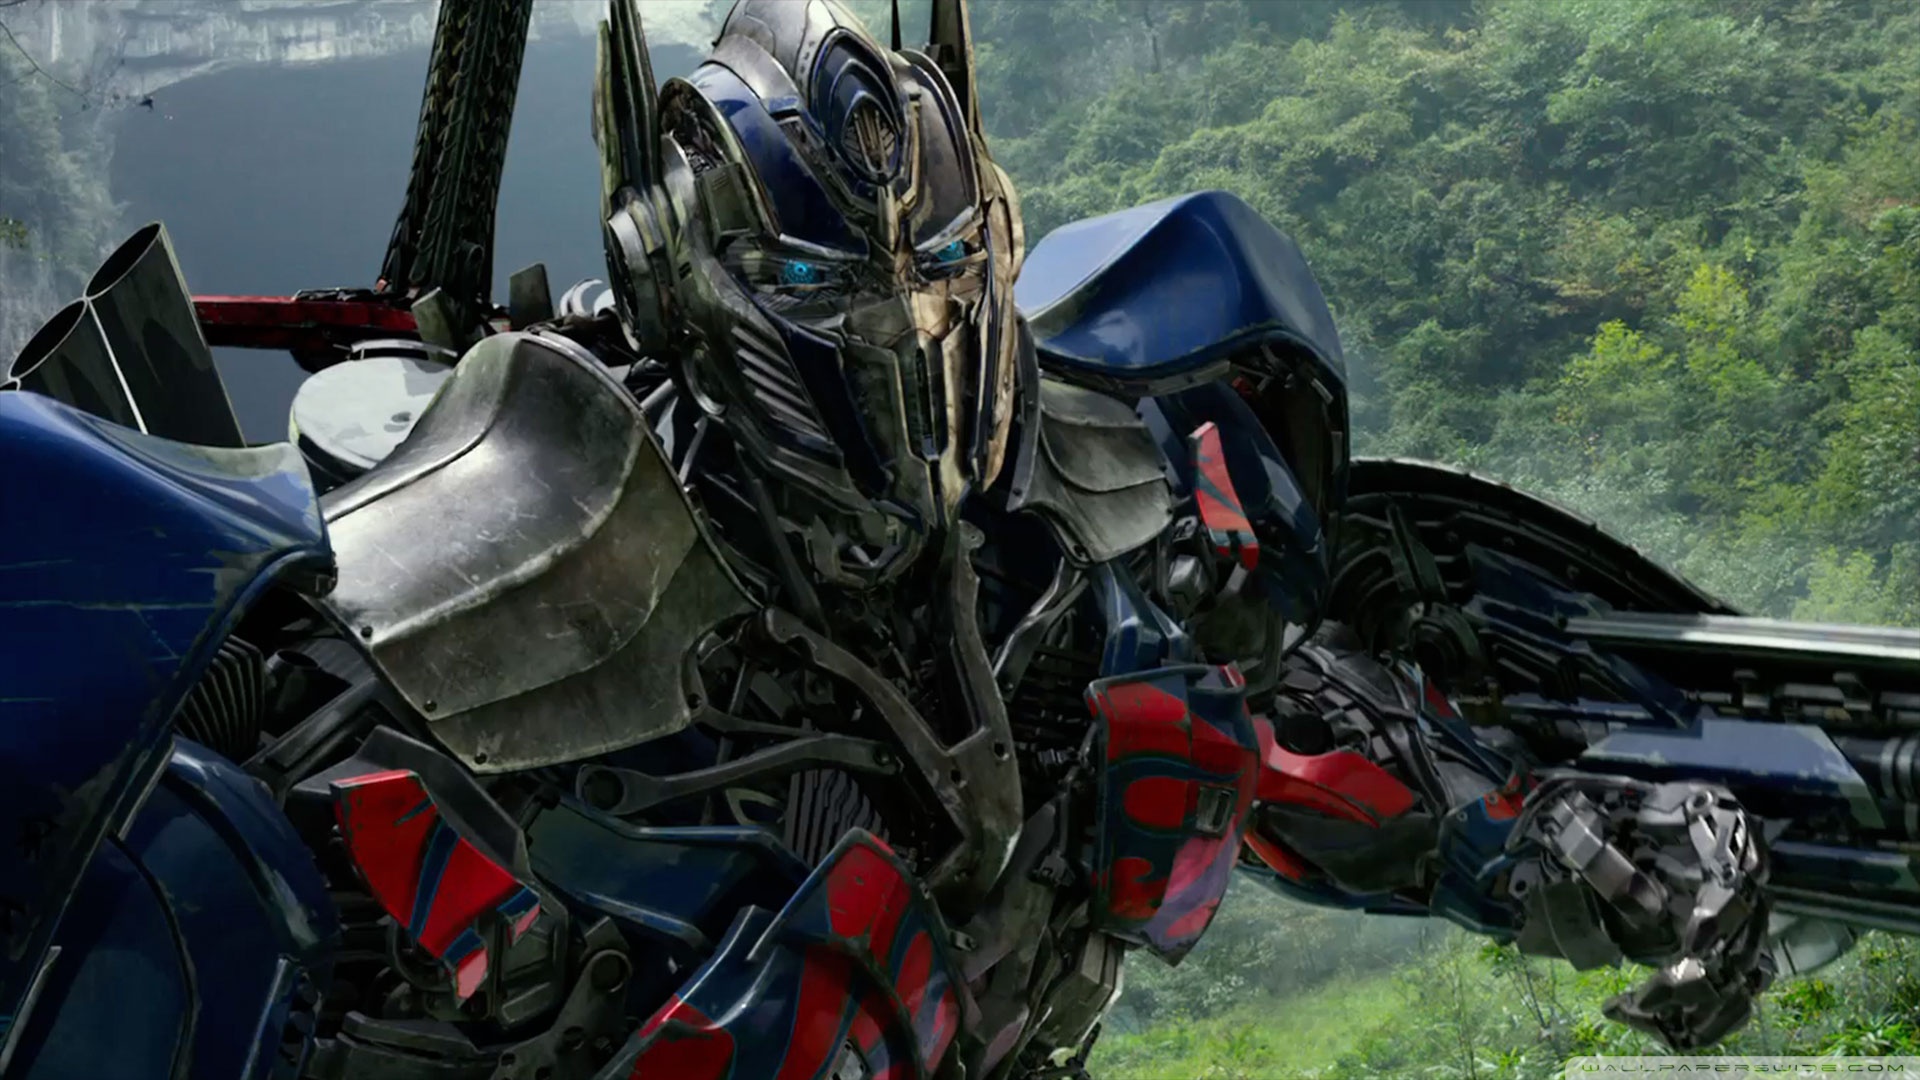 Transformers Optimus Prime Wallpaper - Mbagusi.com